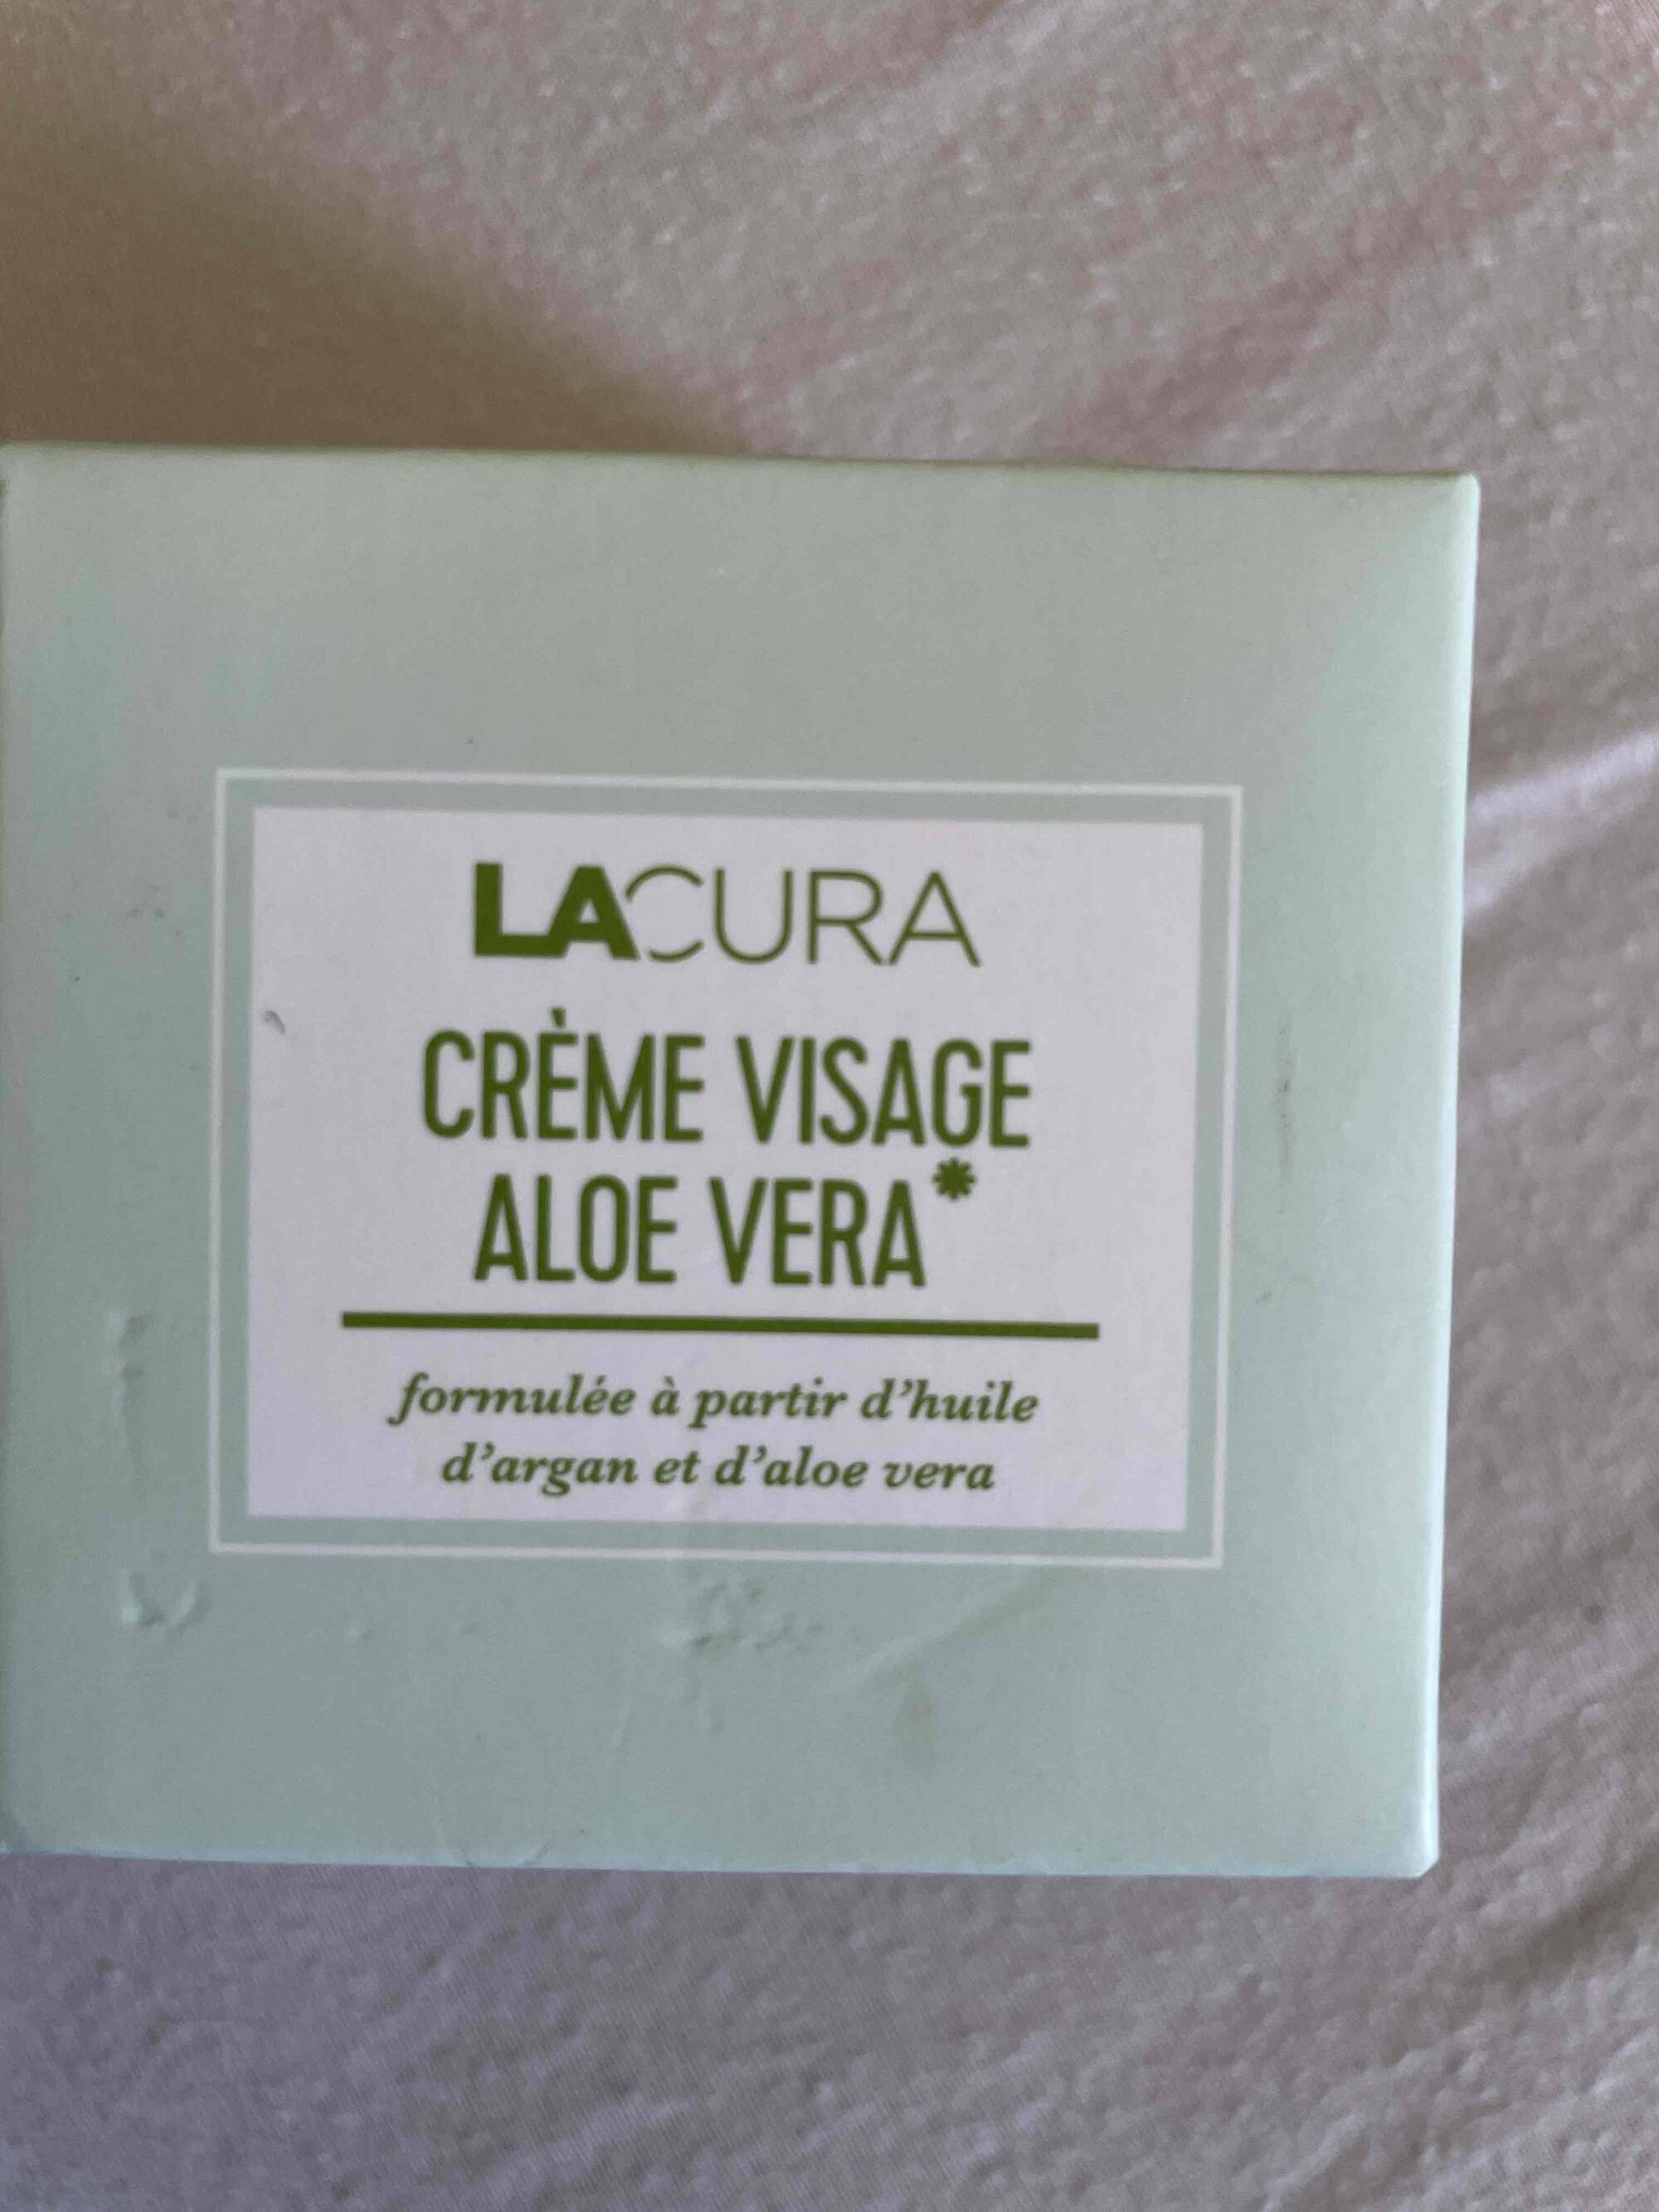 LACURA - Crème visage aloe vera 